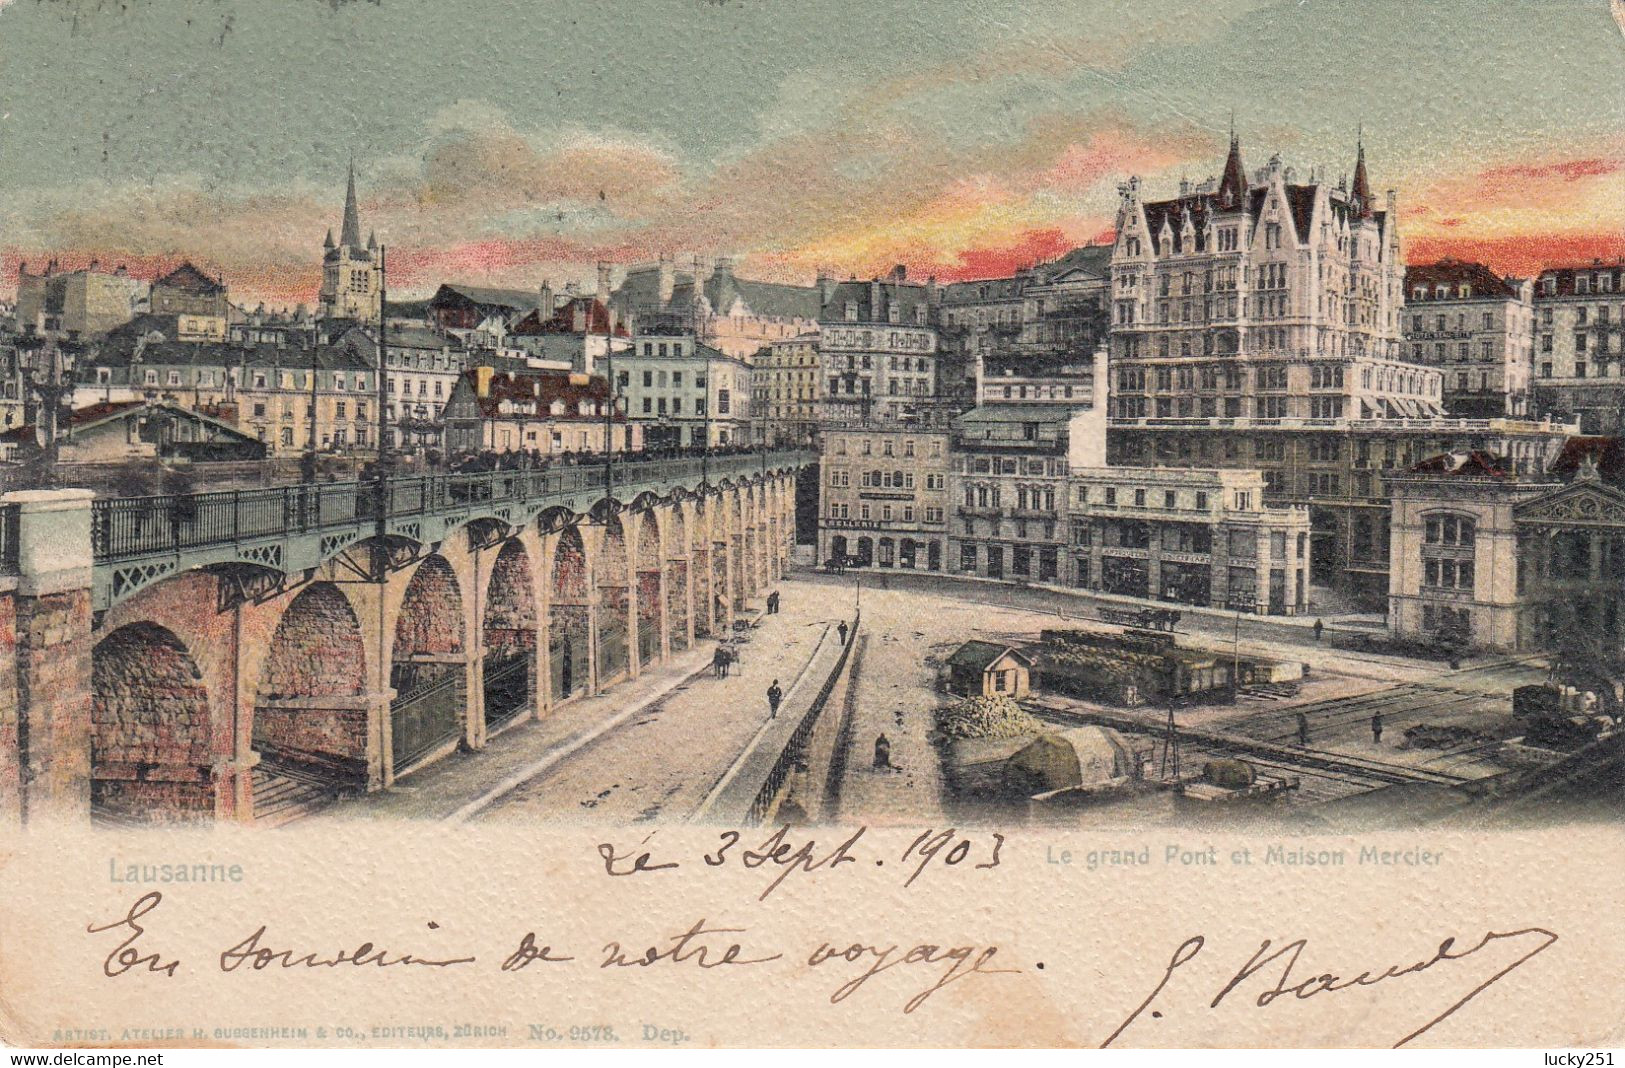 Suisse - Ponts - Lausanne - Le Grand Pont Et Maison Mercier - Circulée Le 03/09/1903 - Bridges